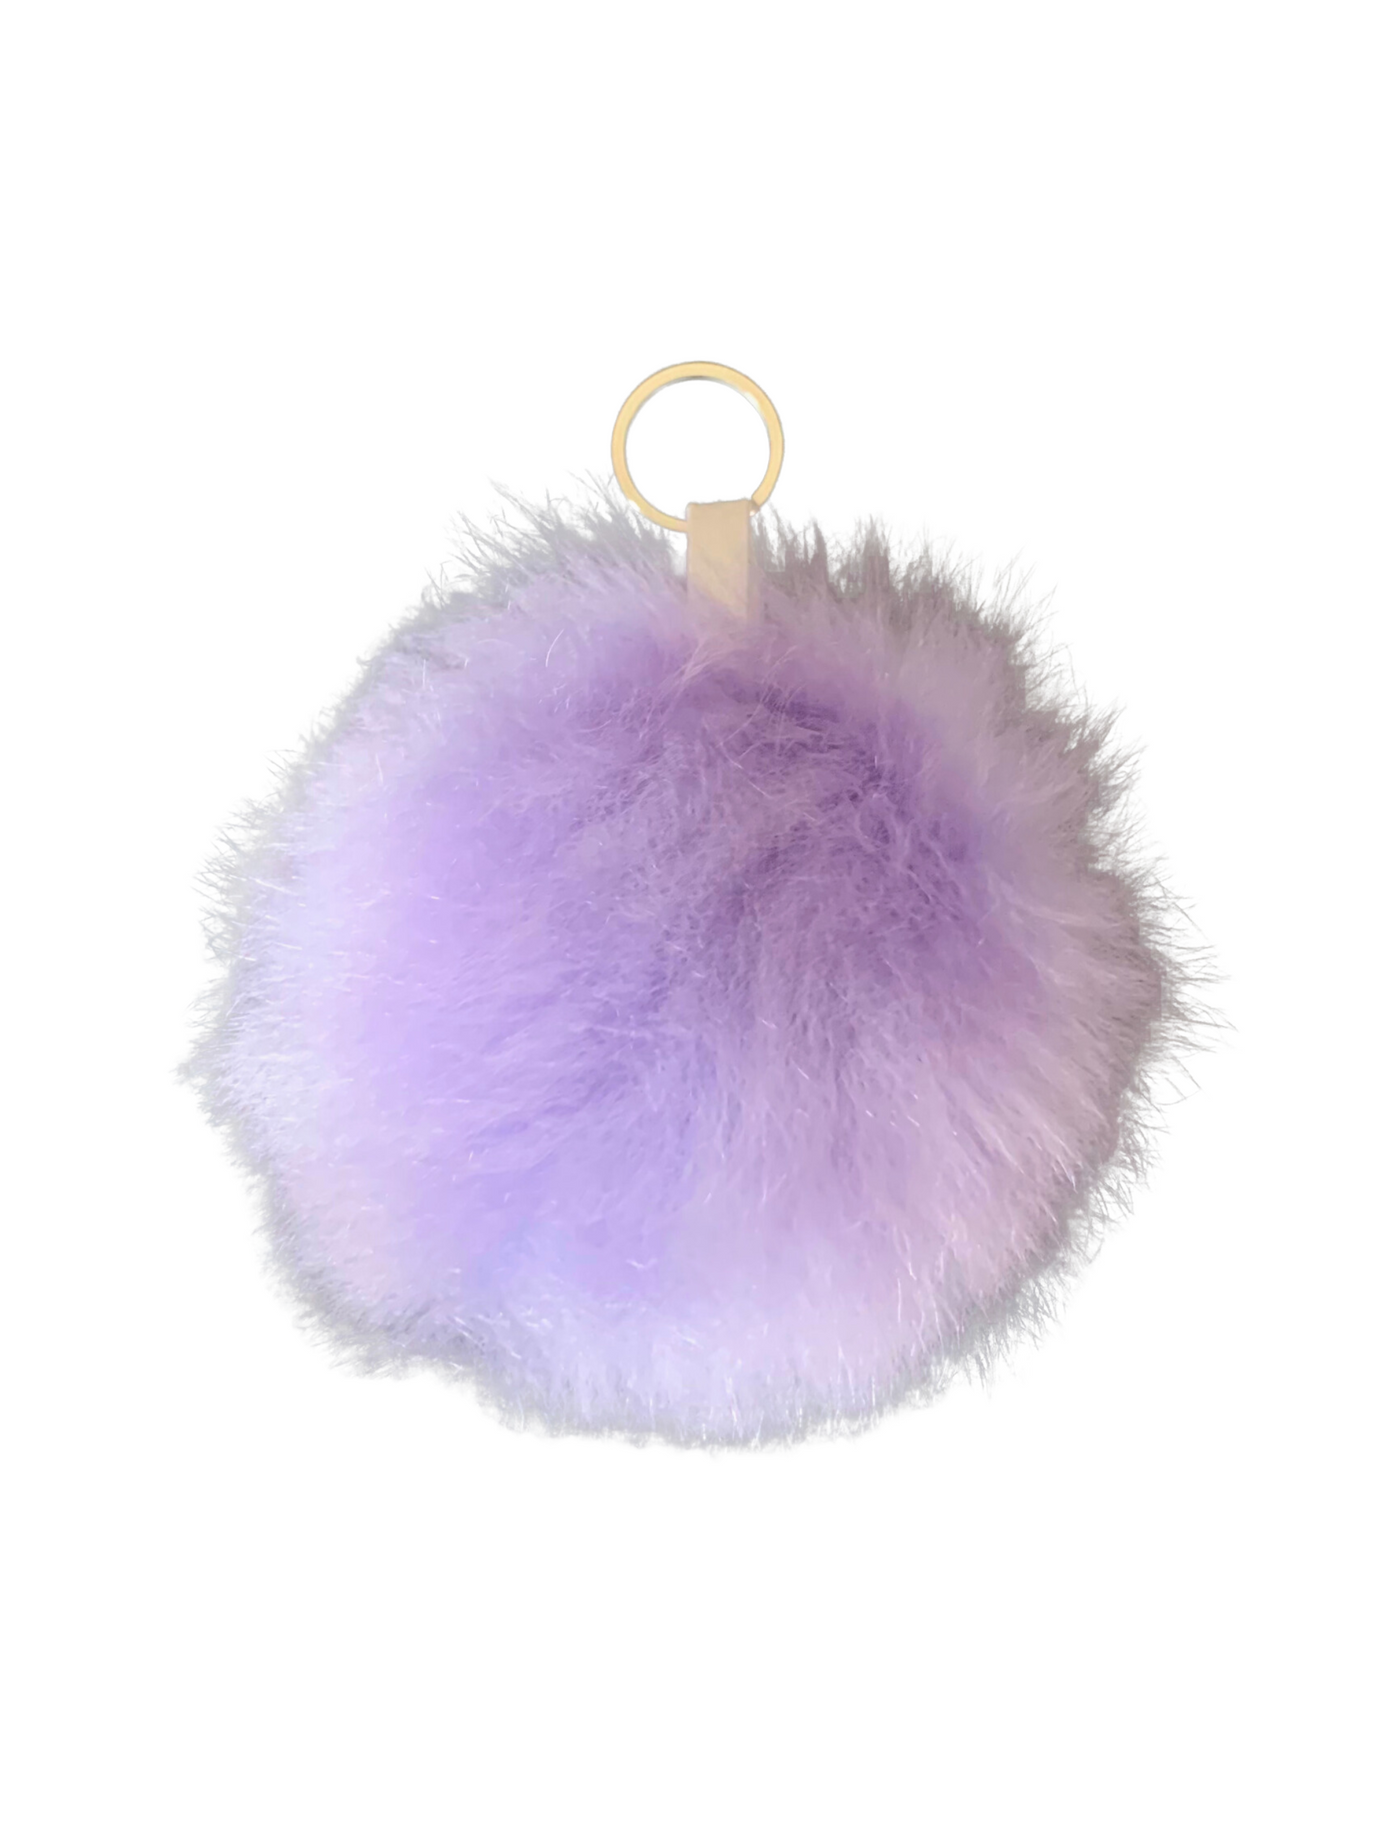 Fluffy Pom Pom Balls Key Chains Wholesale